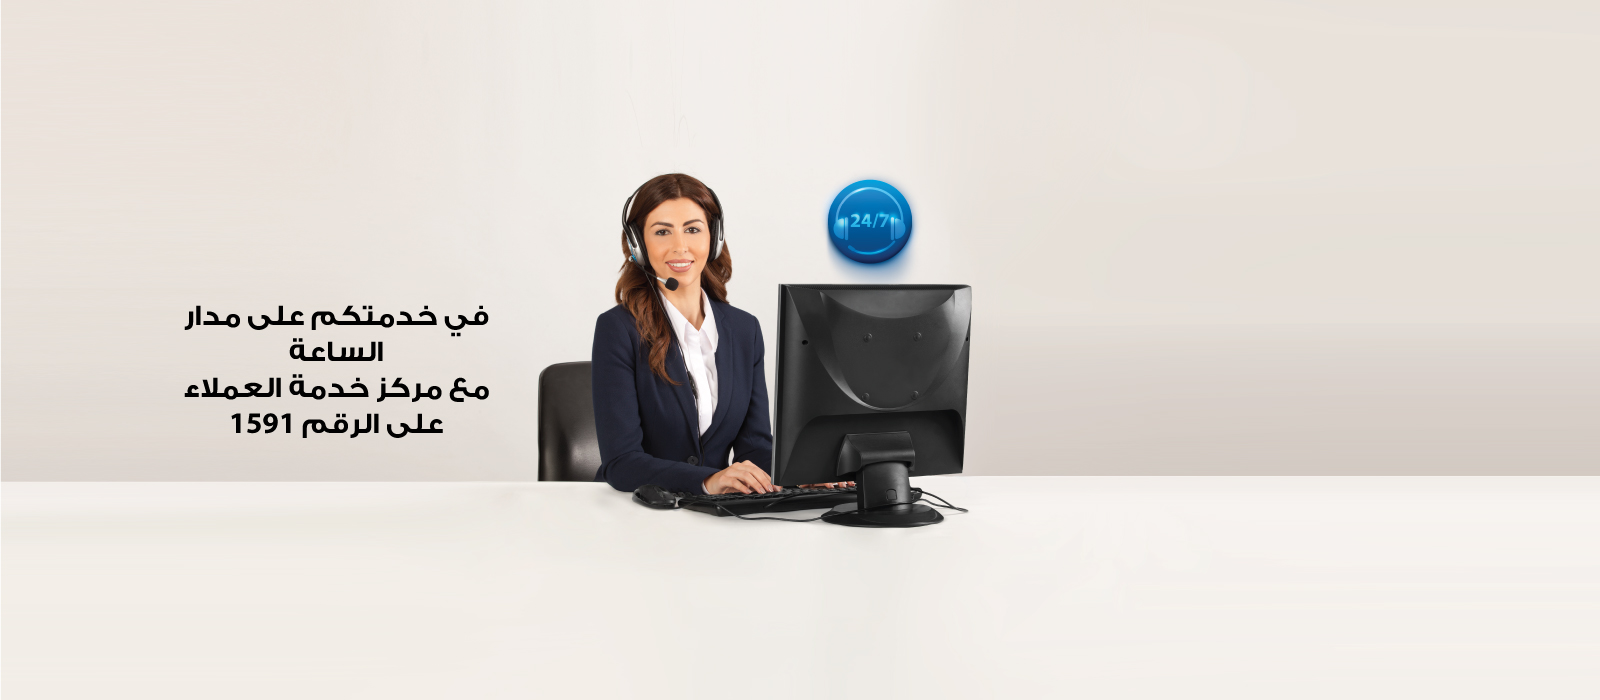 Call-Center-1600x700-Lebanon-A